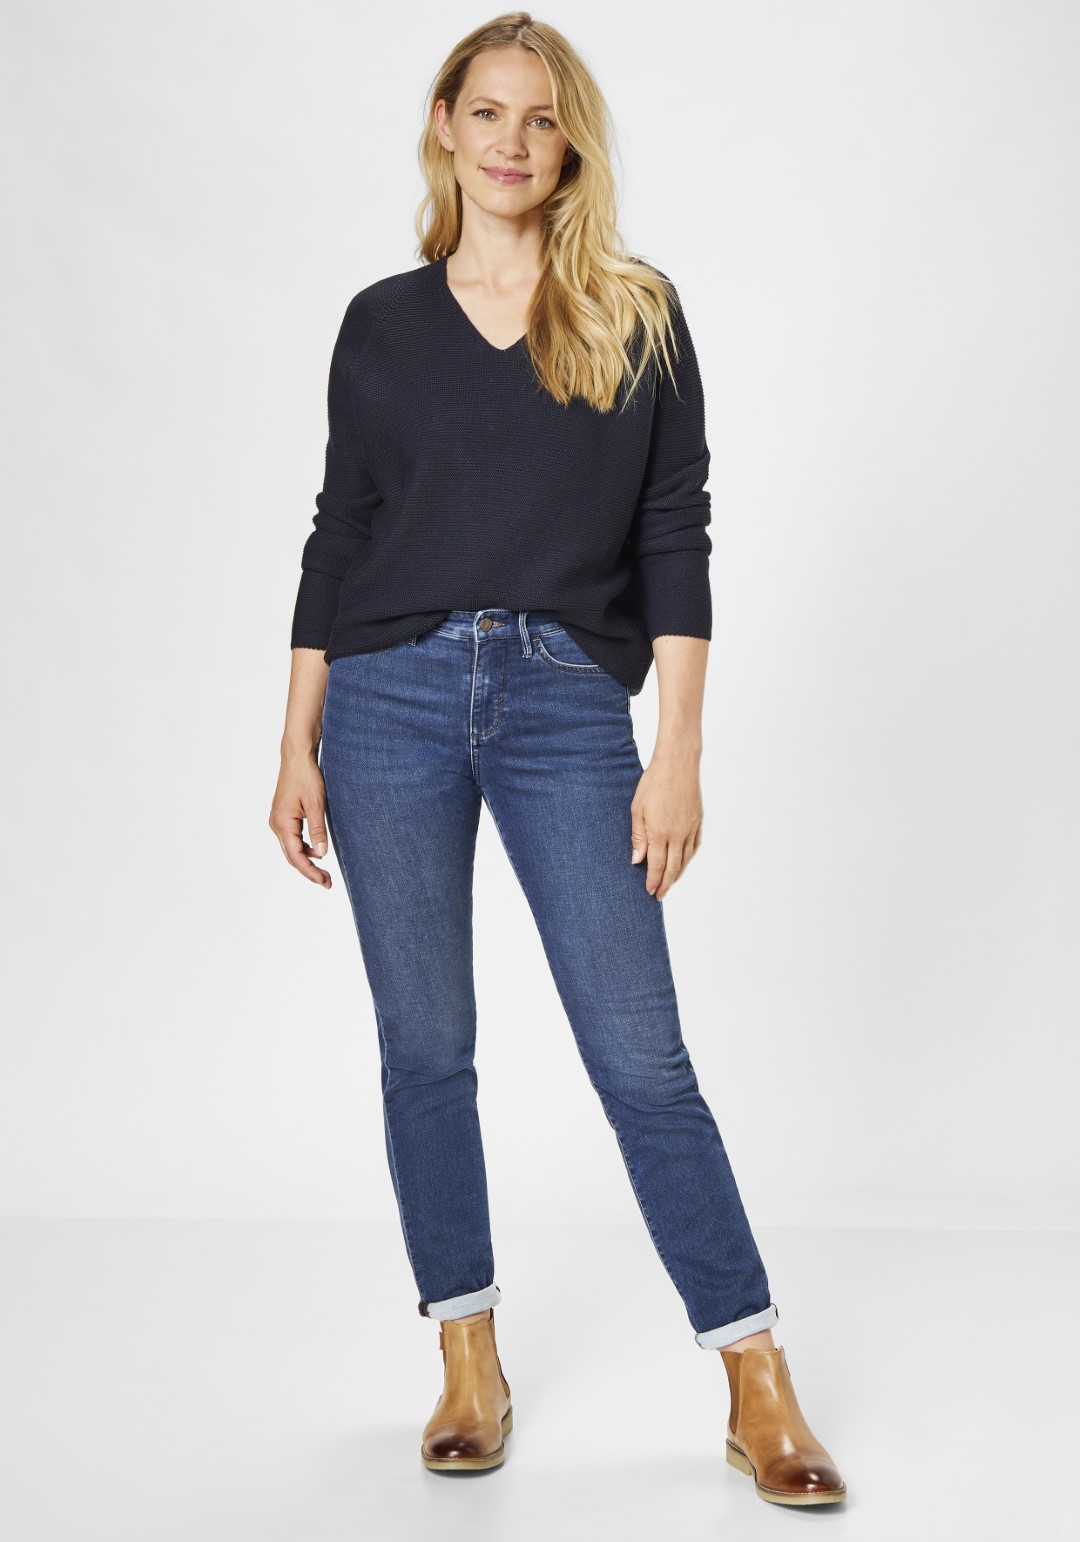 Damen-Jeans direkt vom Hersteller kaufen | PADDOCK'S Online Shop